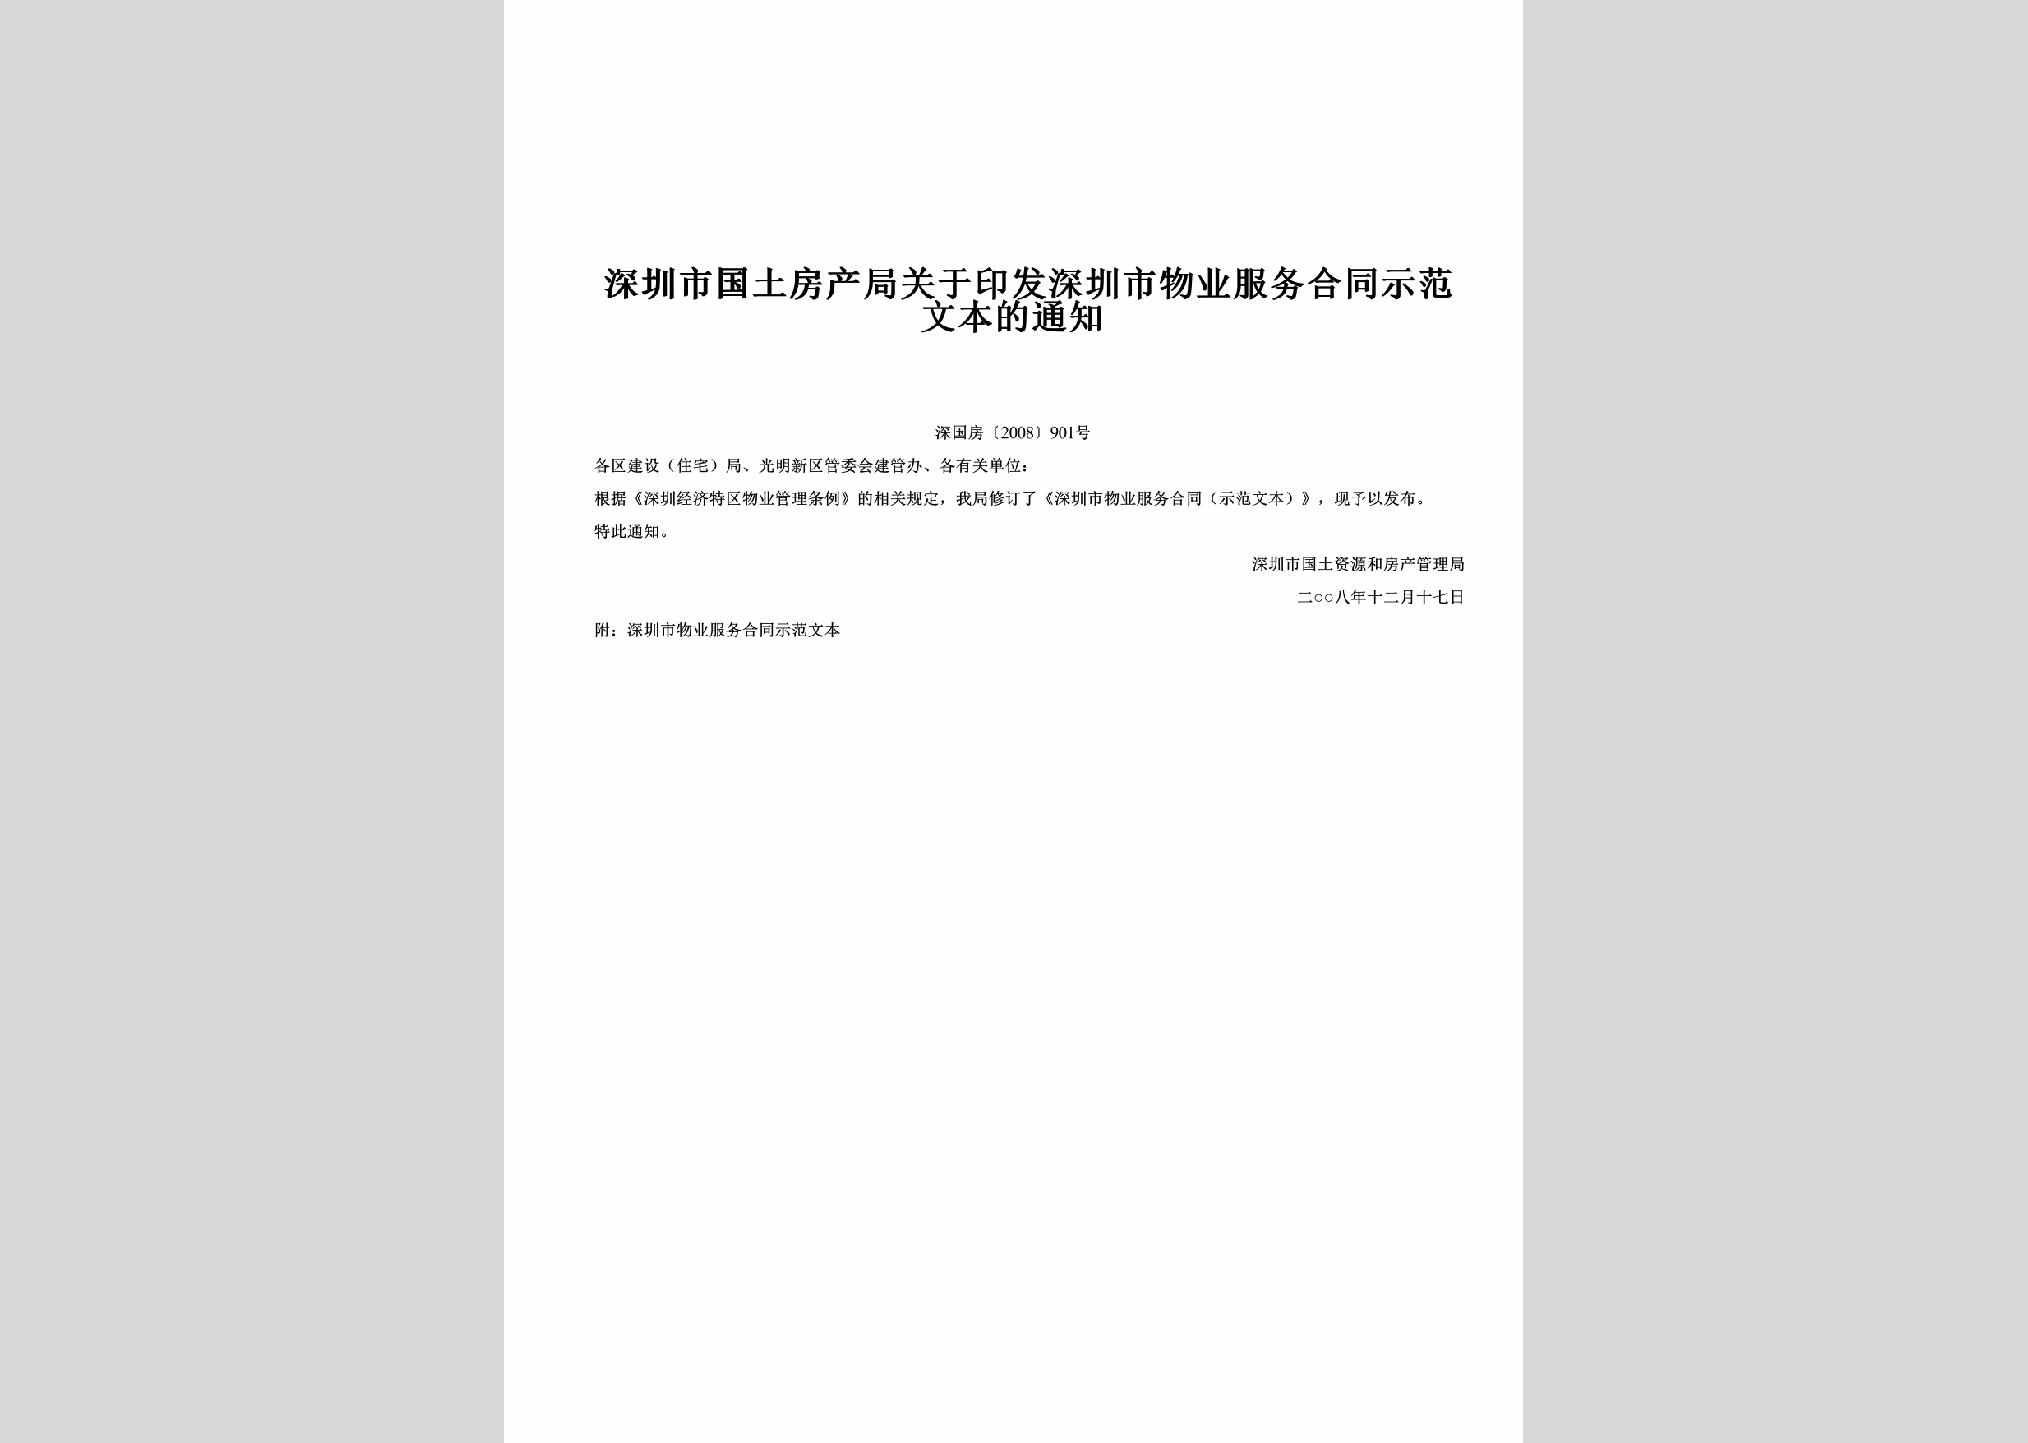 深国房[2008]901号：关于印发深圳市物业服务合同示范文本的通知